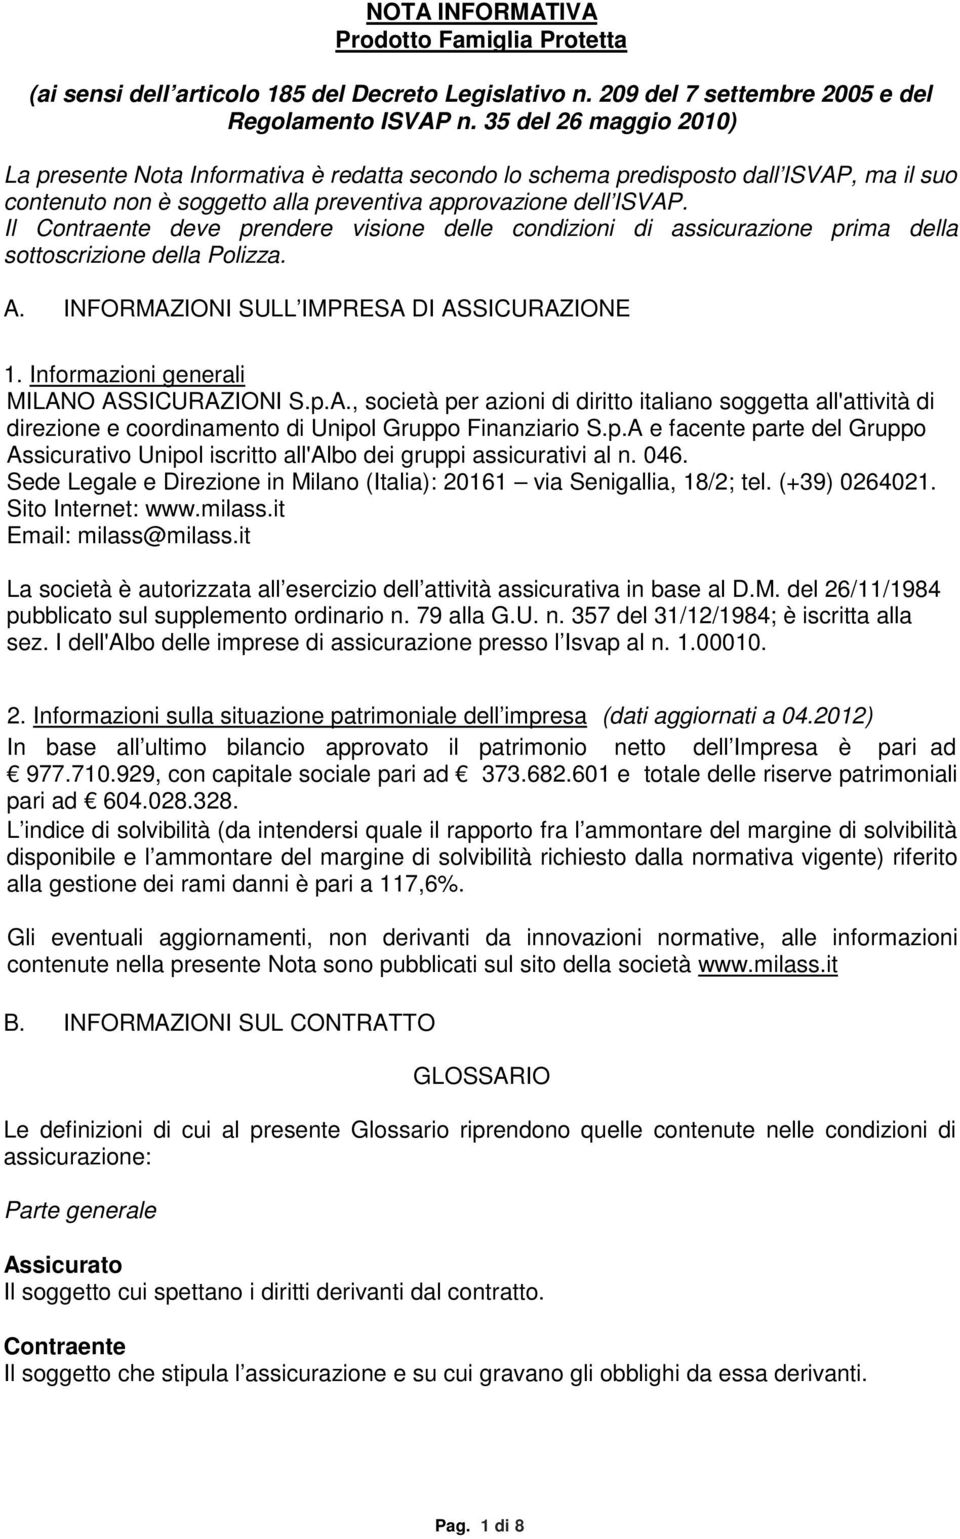 bmp FIRMA_milanodir-italia.png 042012 042012 NOTA INFORMATIVA Prodotto Famiglia Protetta (ai sensi dell articolo 185 del Decreto Legislativo n. 209 del 7 settembre 2005 e del Regolamento ISVAP n.